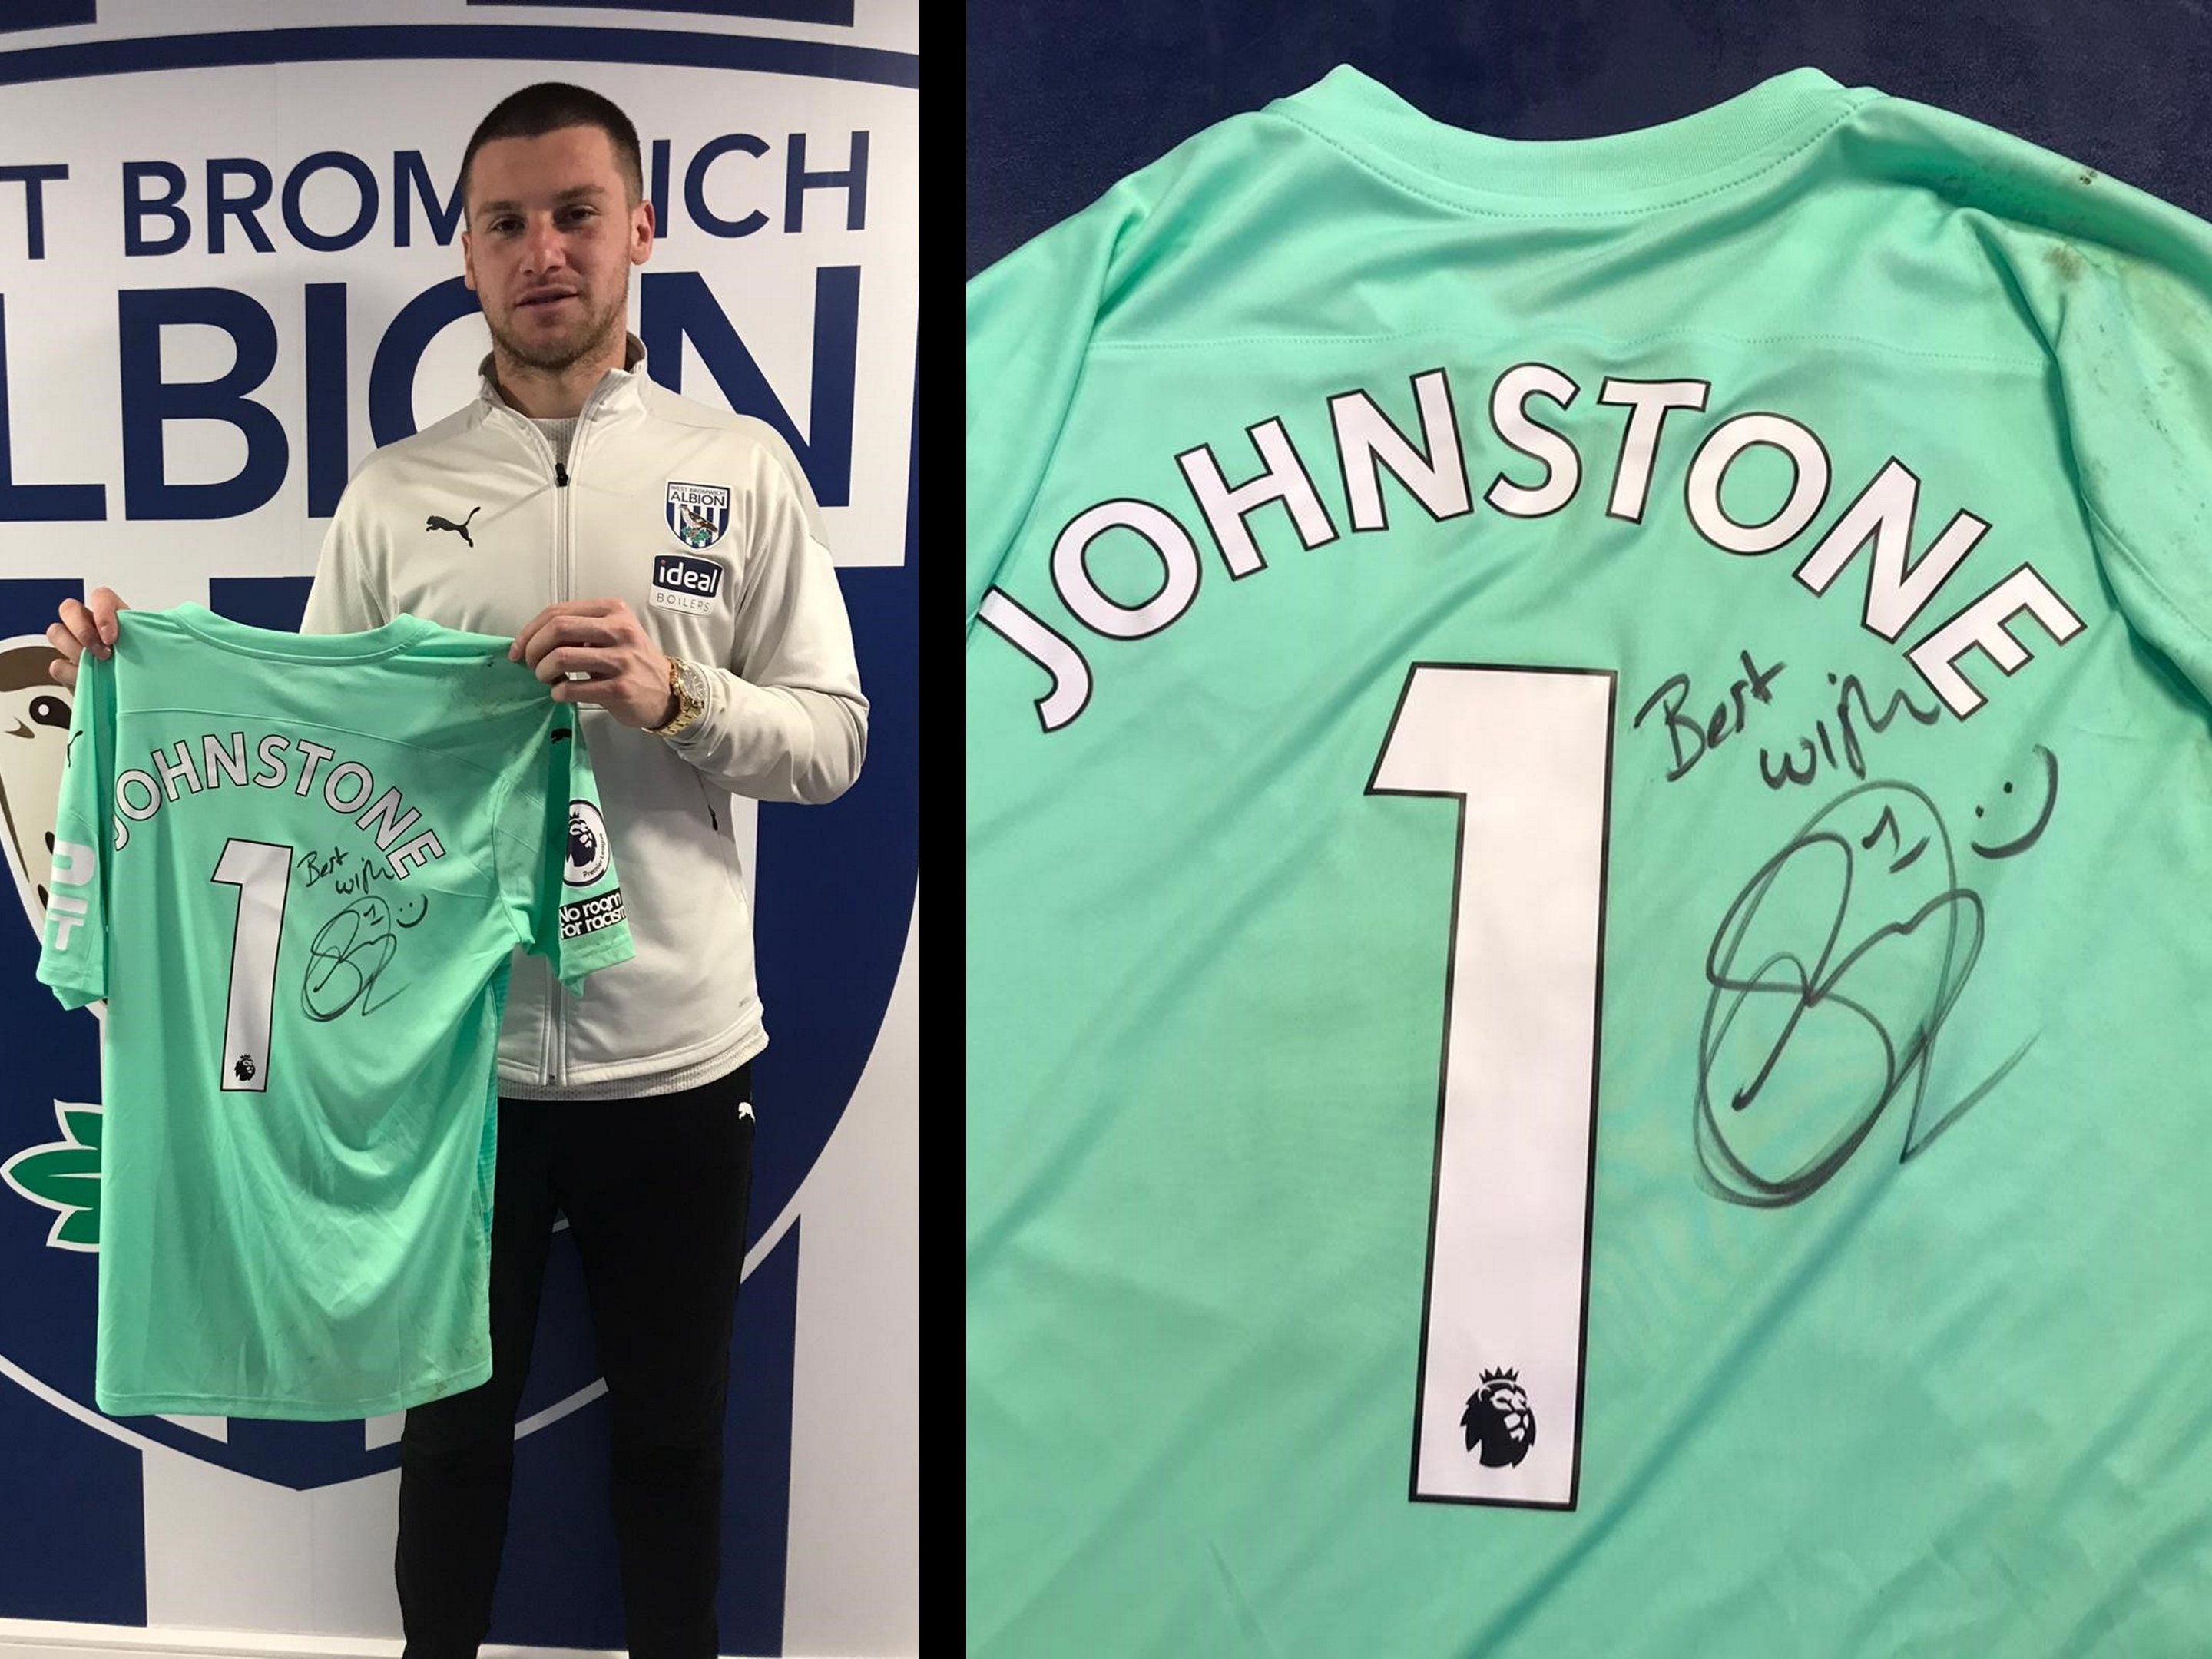 Johnstone Signed Shirt